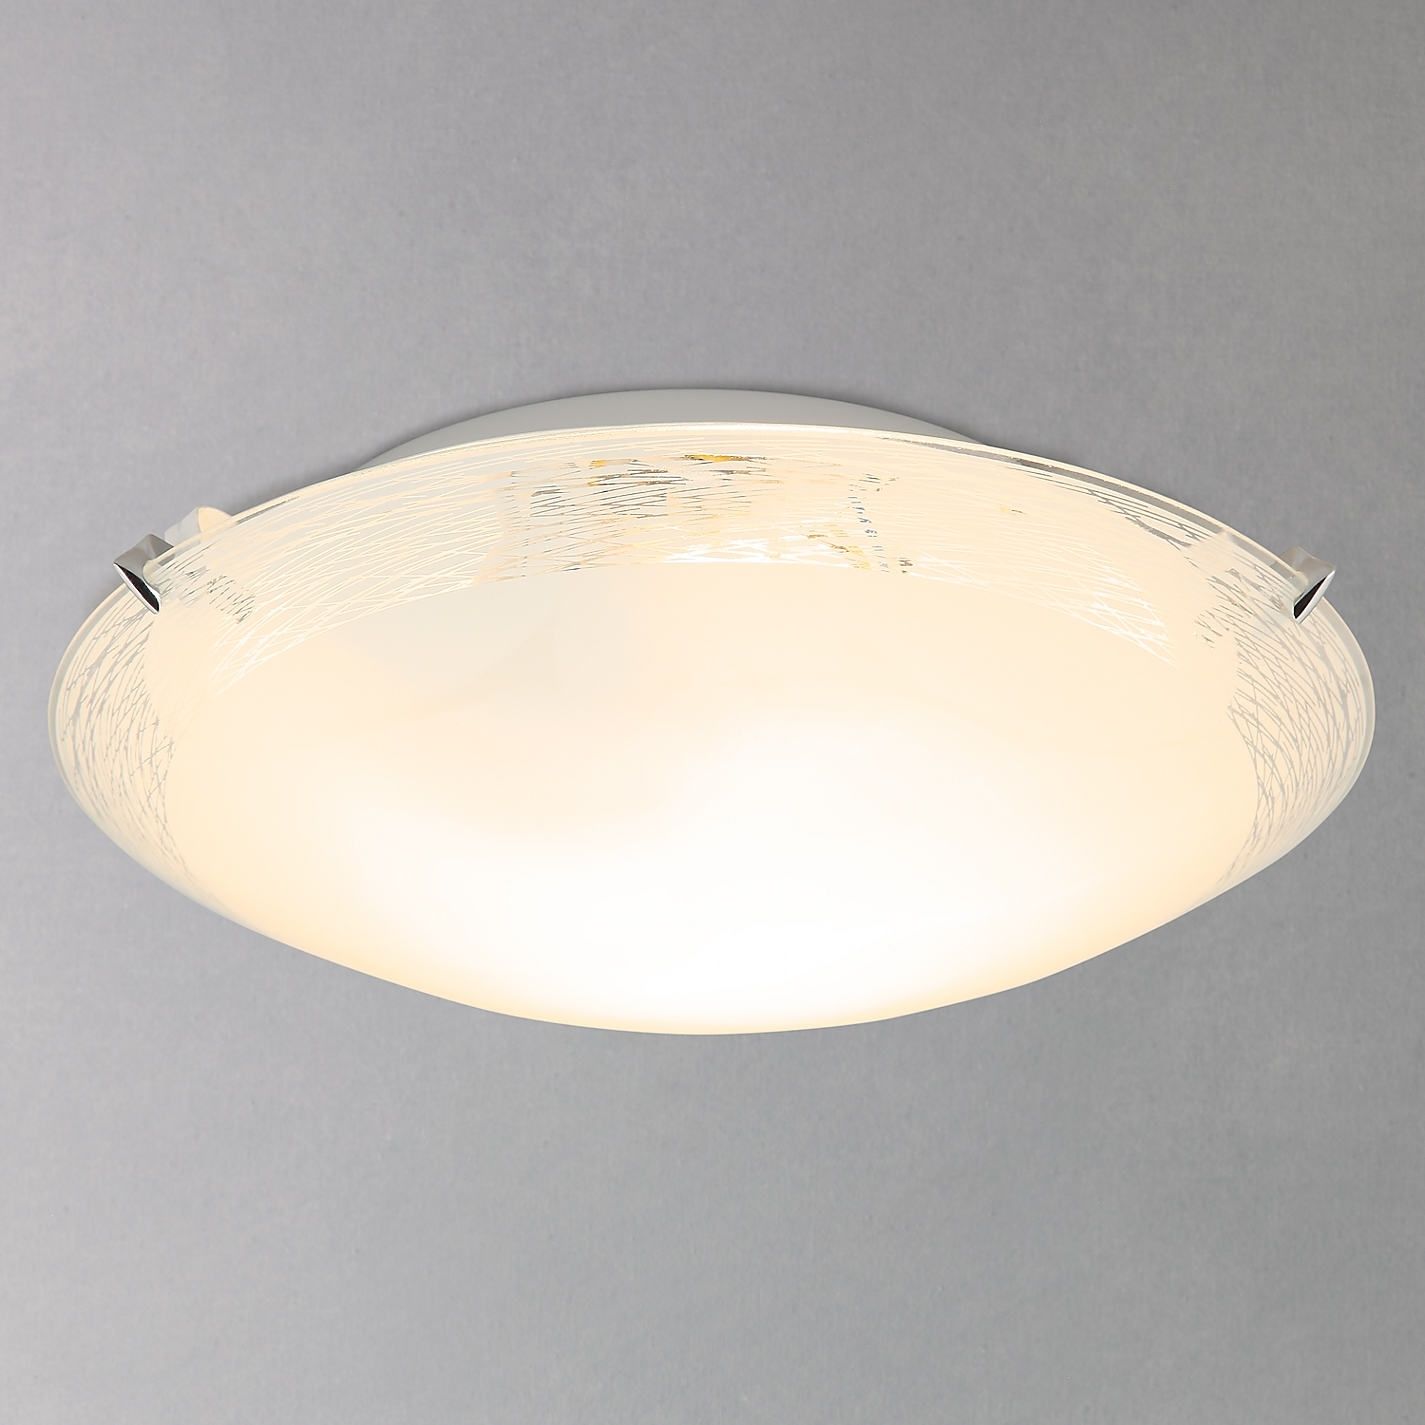 Light : Amusing Flush Ceiling Light For Your Brass Pendant Lighting Regarding John Lewis Outdoor Ceiling Lights (Photo 1 of 15)